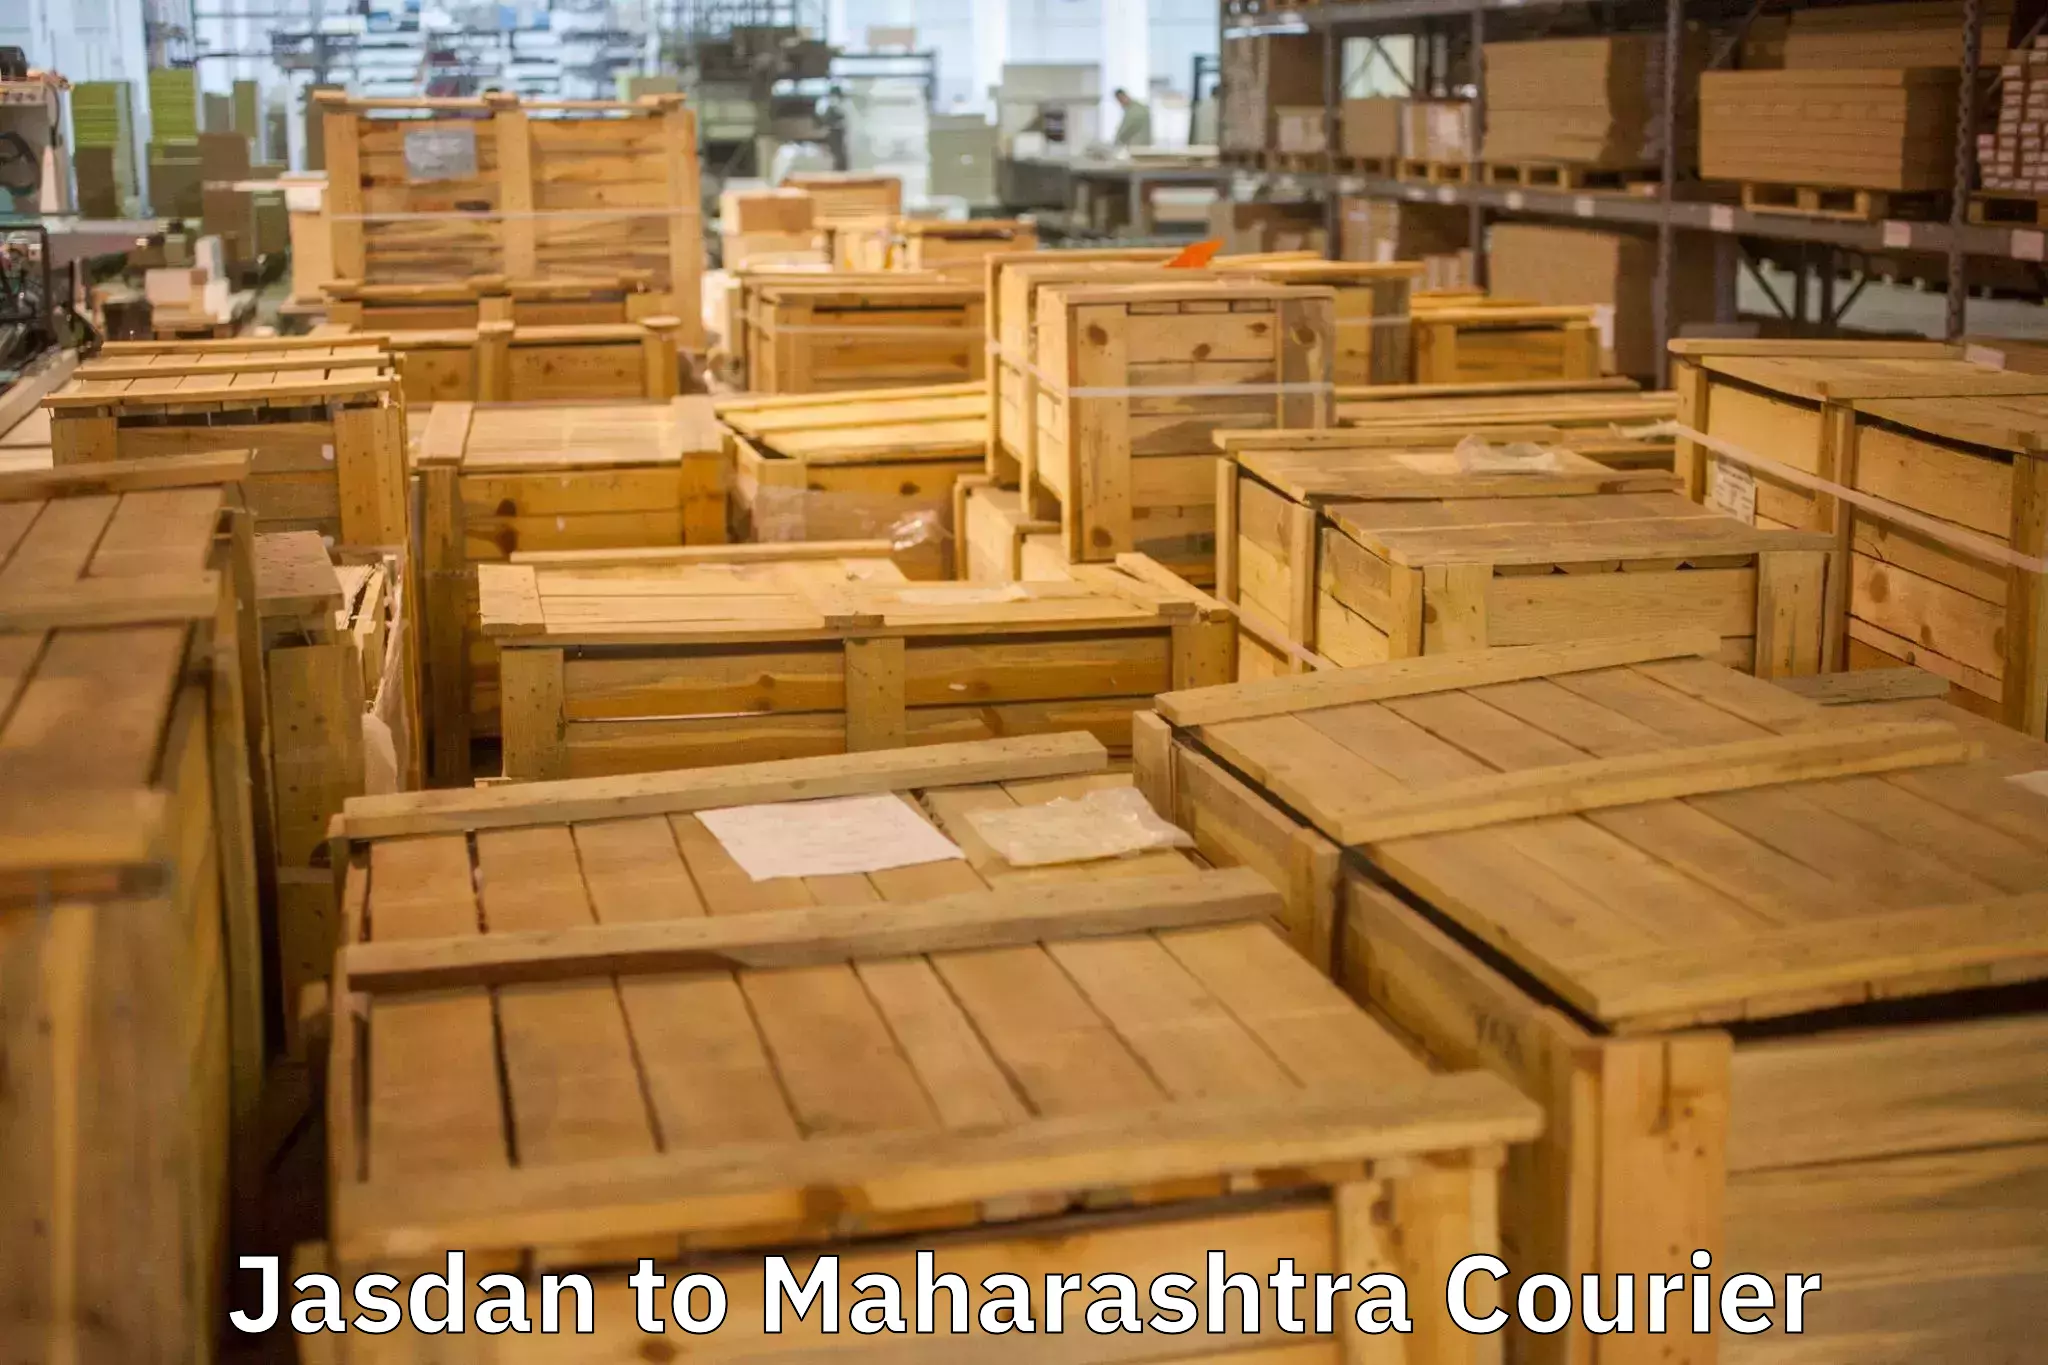 Furniture moving plans Jasdan to Maharashtra